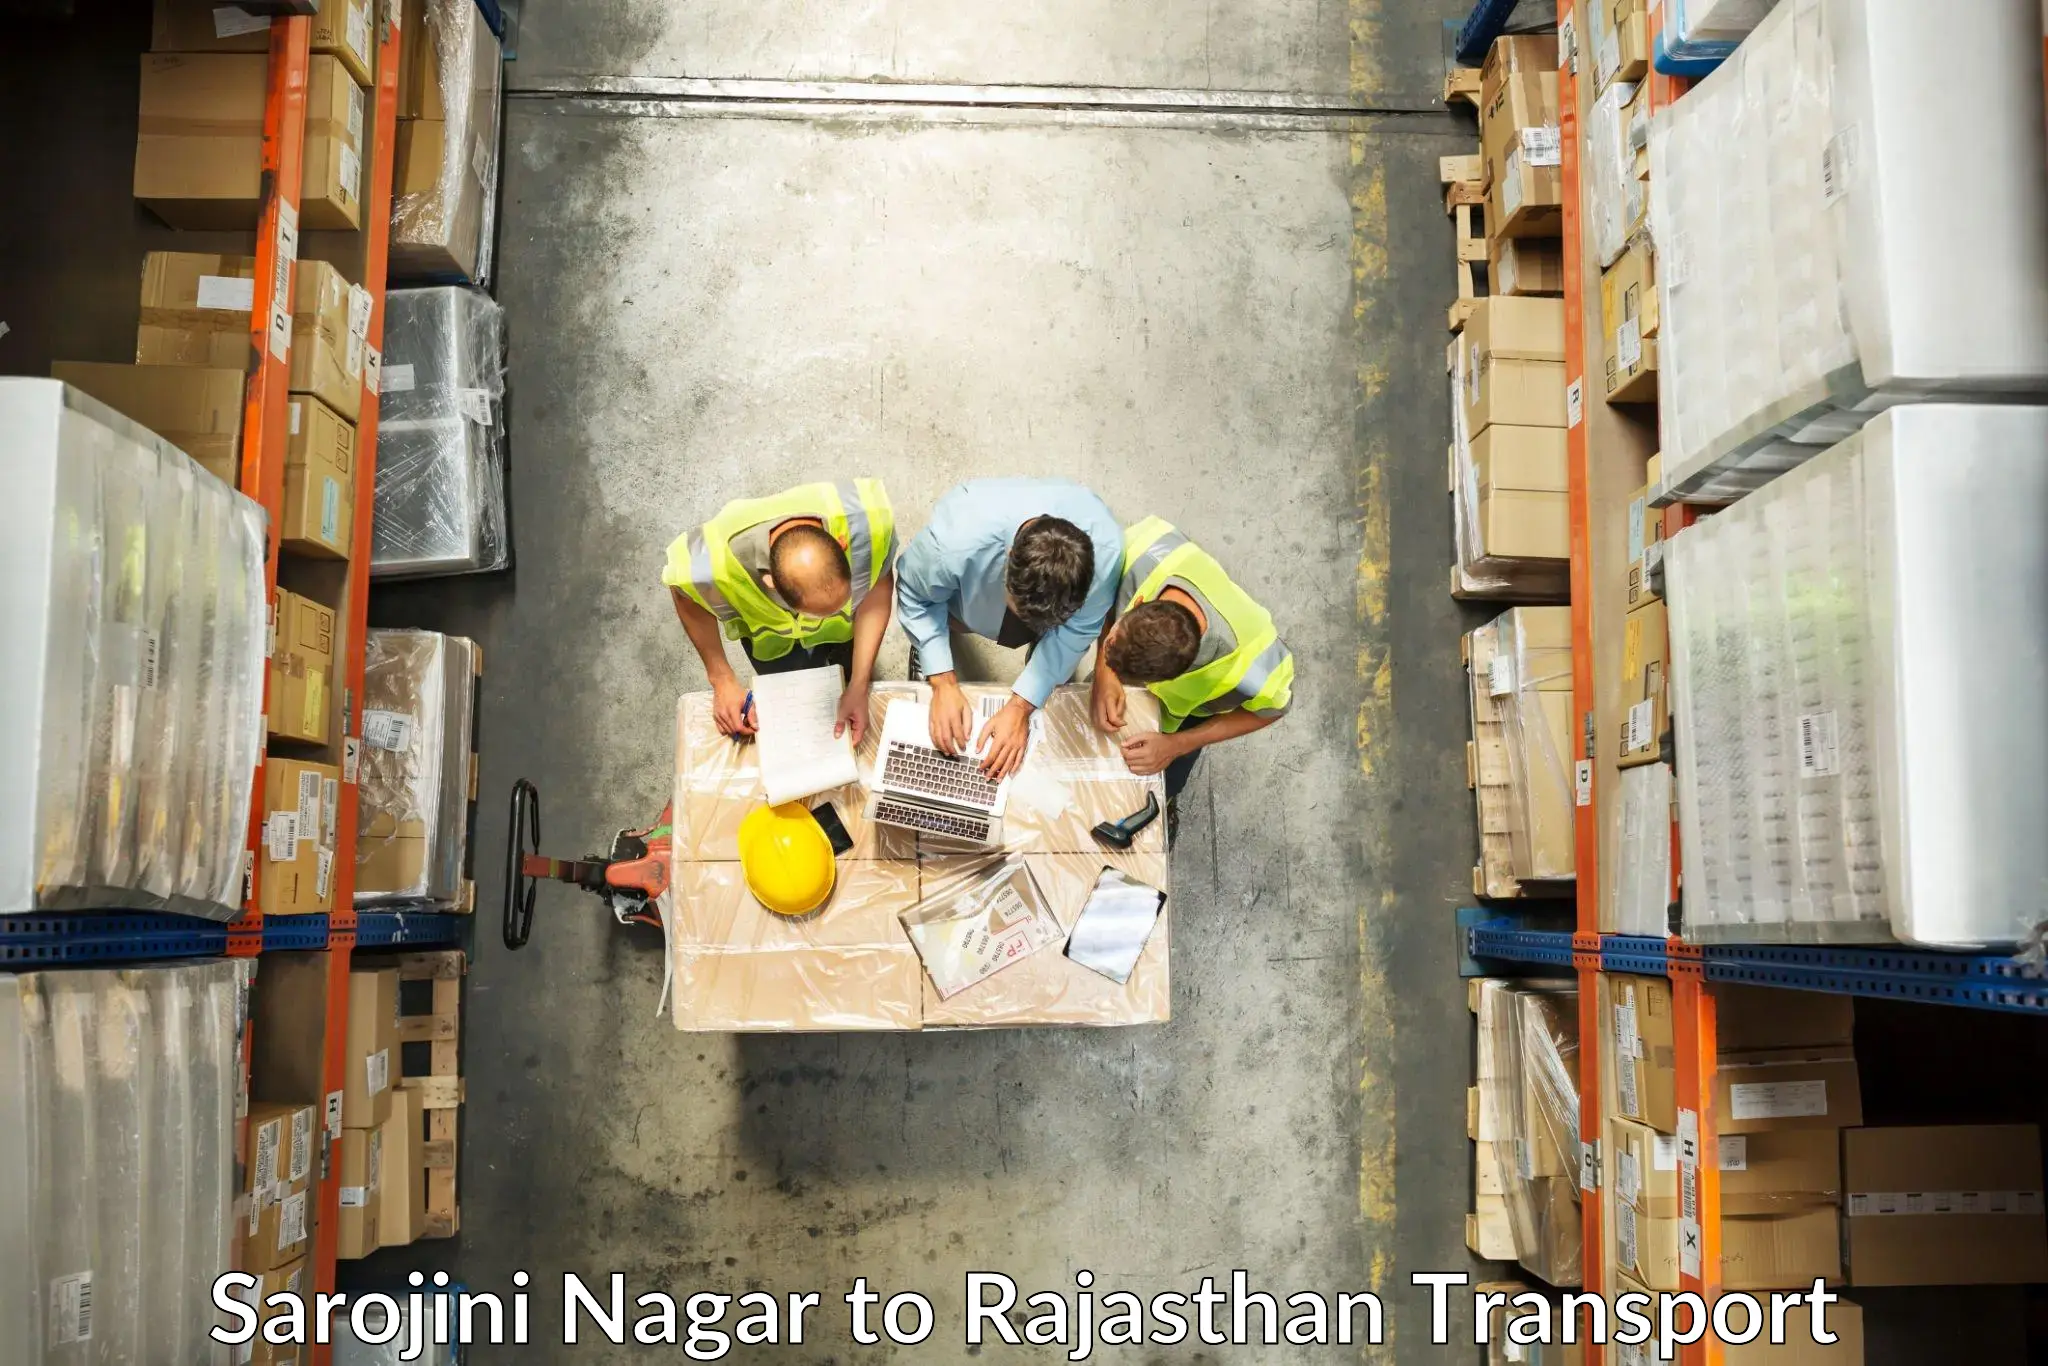 Container transport service Sarojini Nagar to Sirohi